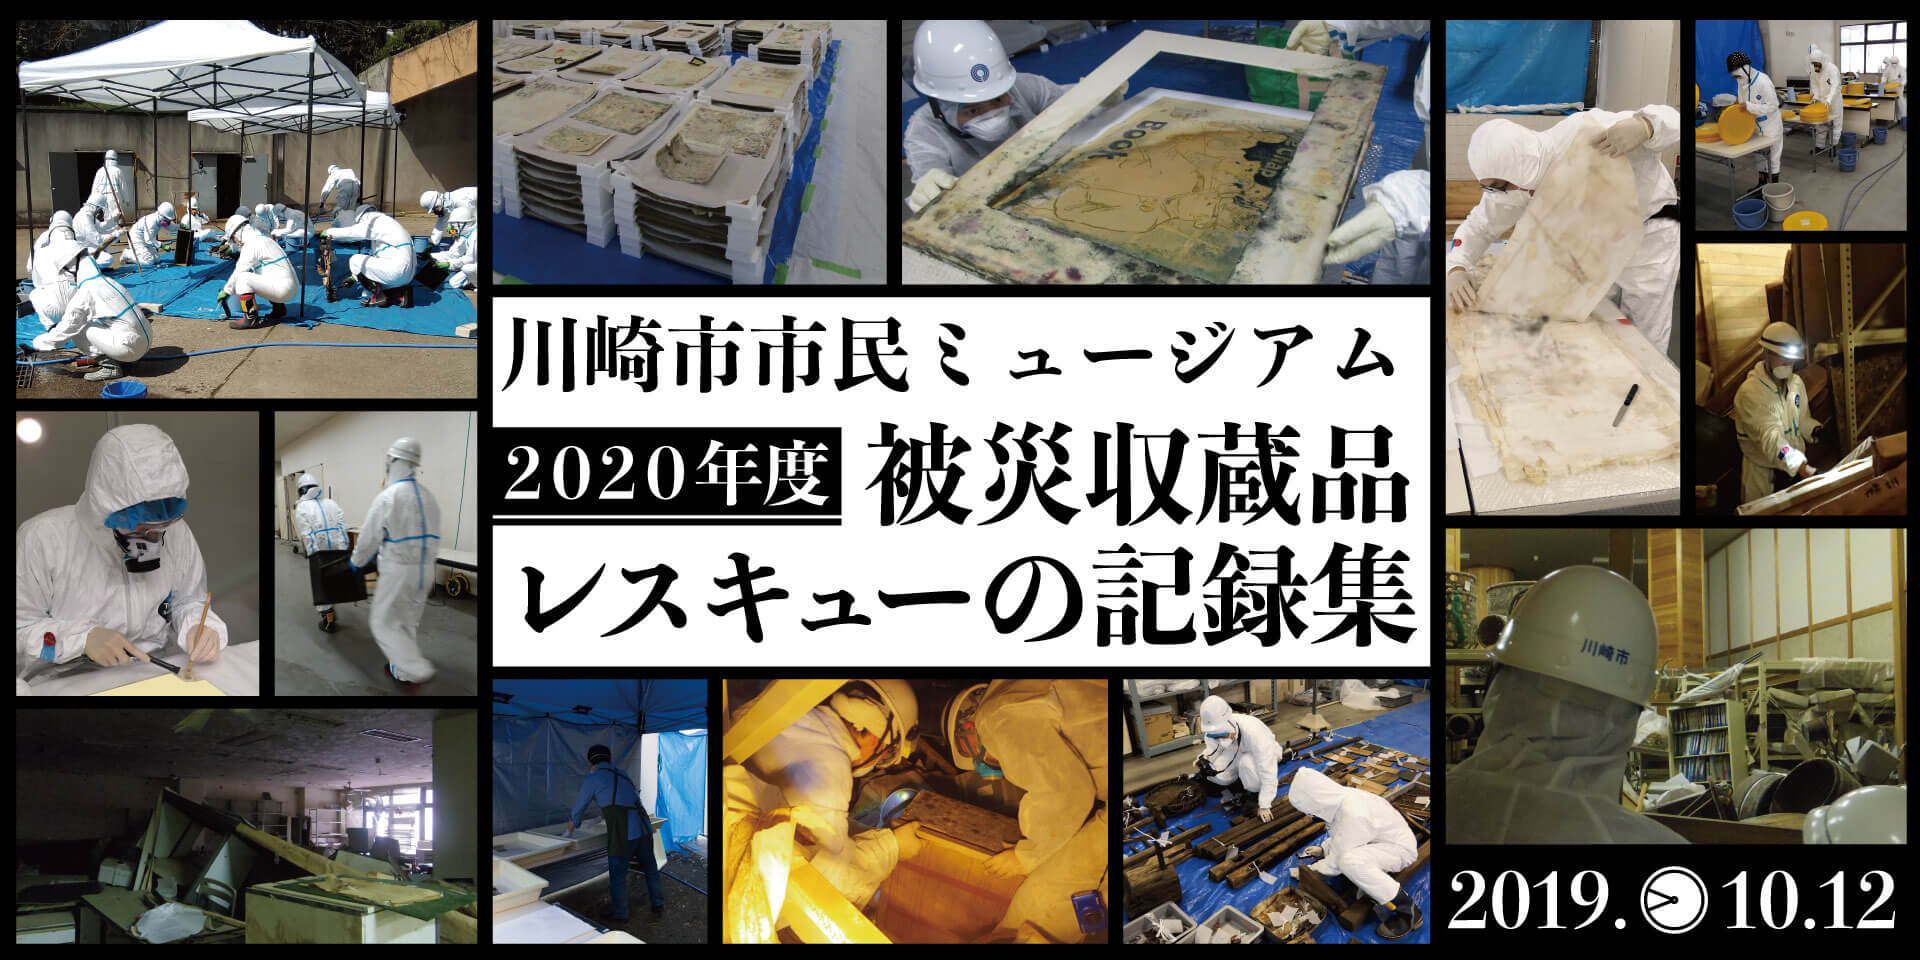 2020年度 川崎市市民ミュージアム 被災収蔵品レスキューの記録集